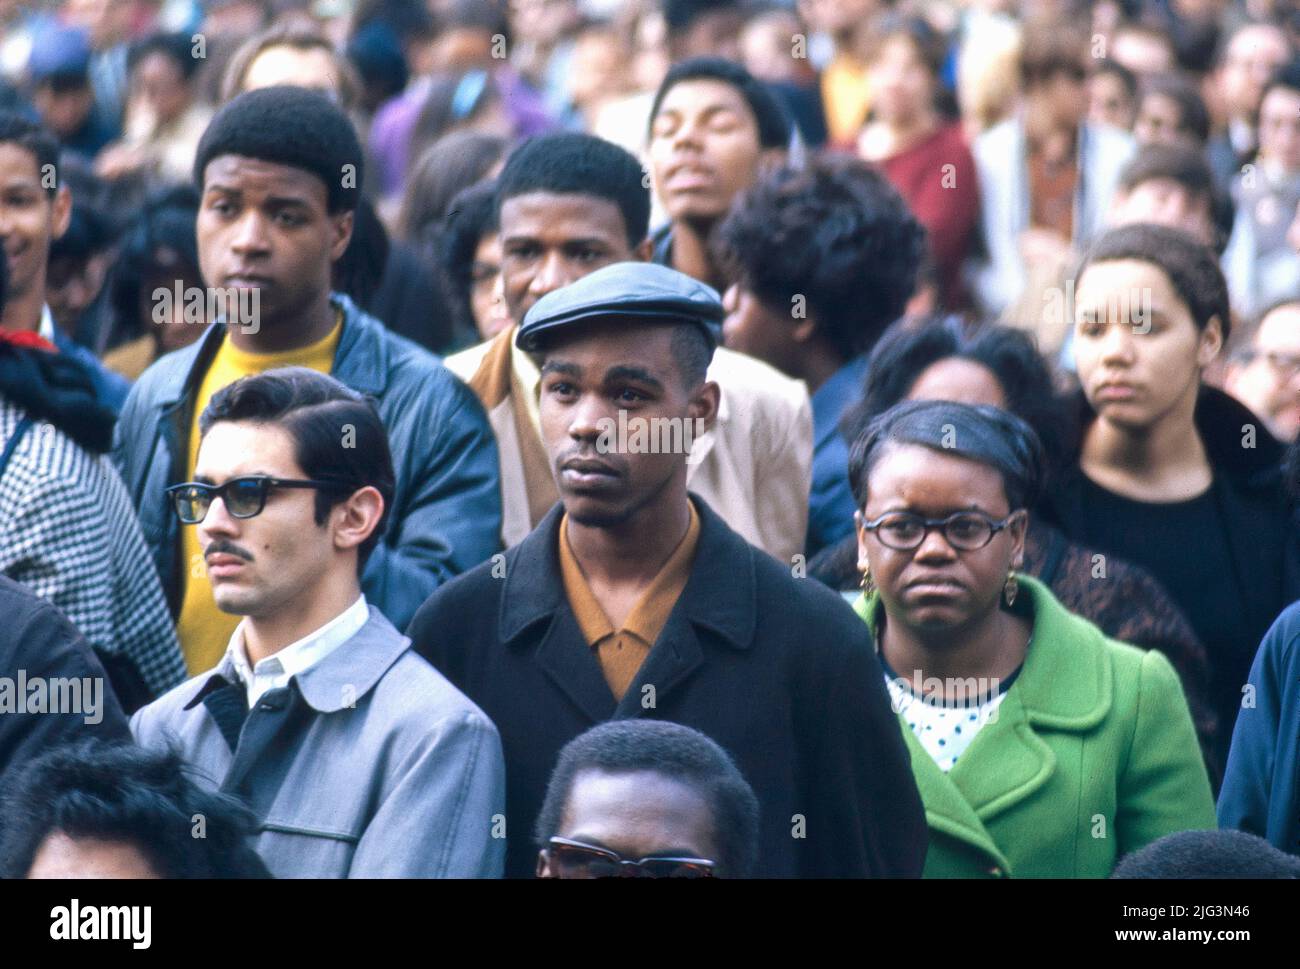 Foule lors d'une manifestation contre l'assassinat de Martin Luther King, Jr., Central Park, New York City, New York, Etats-Unis, Bernard Gotfryd, 5 avril 1968 Banque D'Images